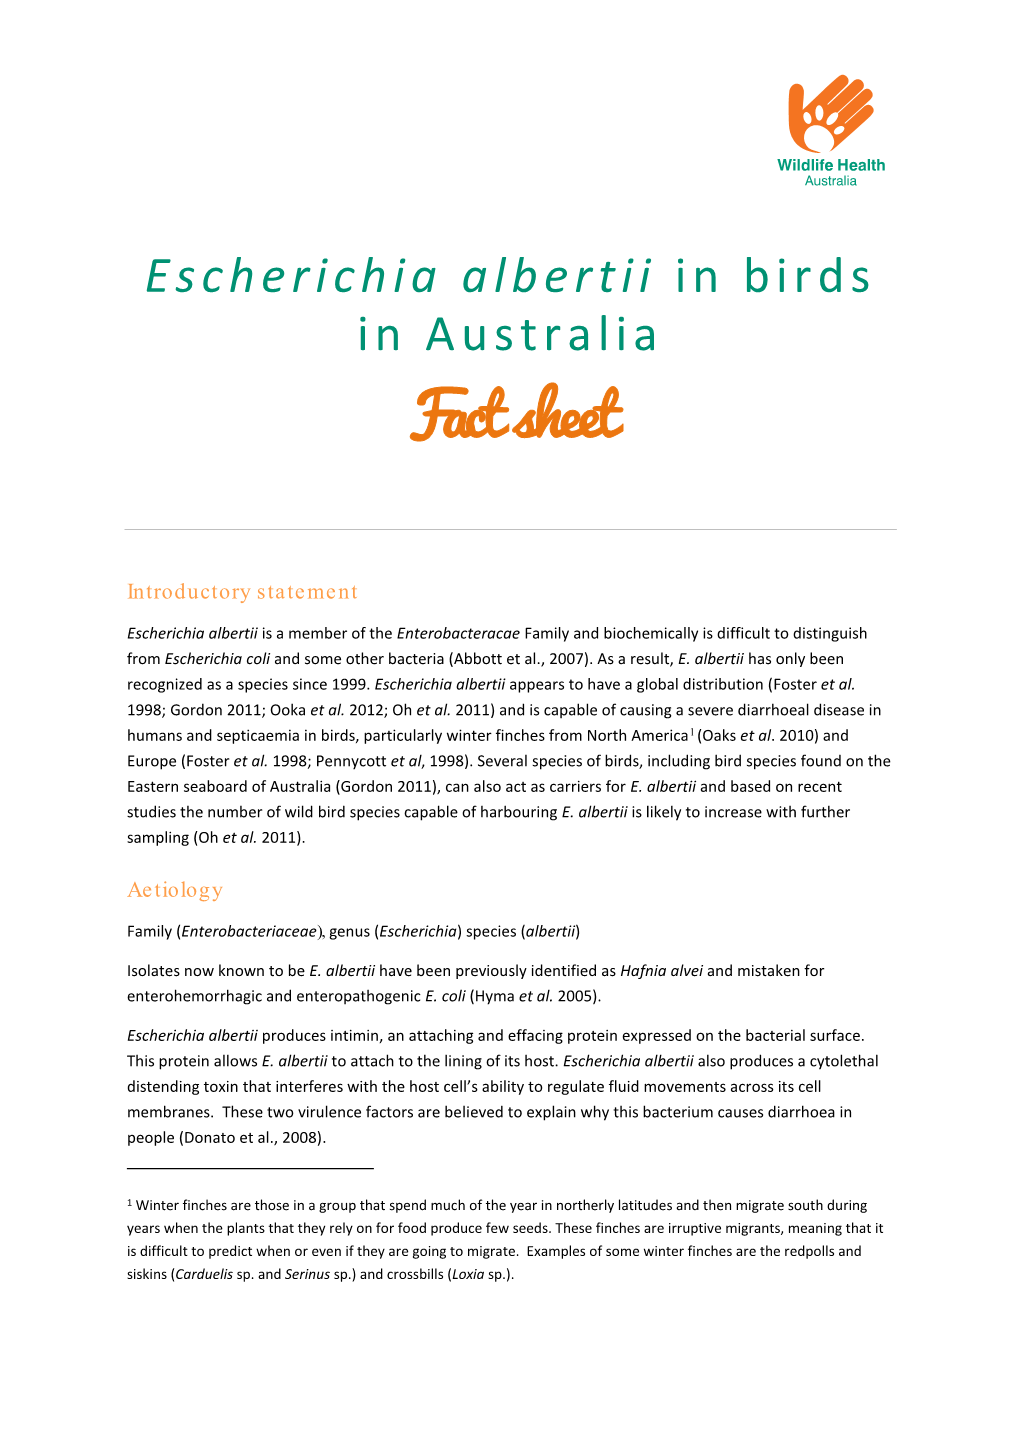 Escherichia Albertii in Birds in Australia Fact Sheet